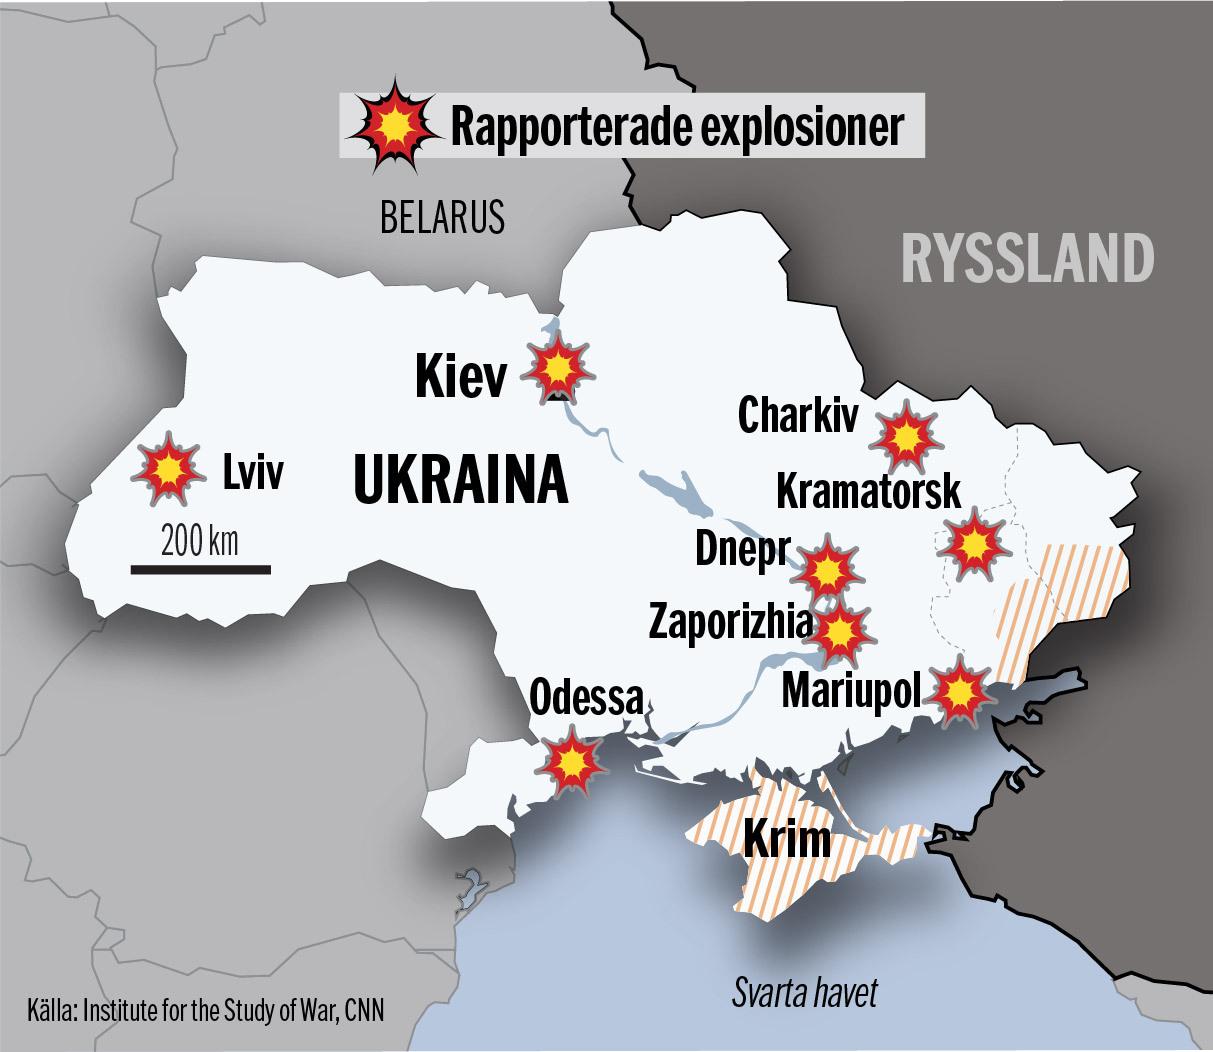 Explosioner har rapporterats i bland annat Lviv, Odessa, Mariupol, Dnepr, Charkiv och Kiev.